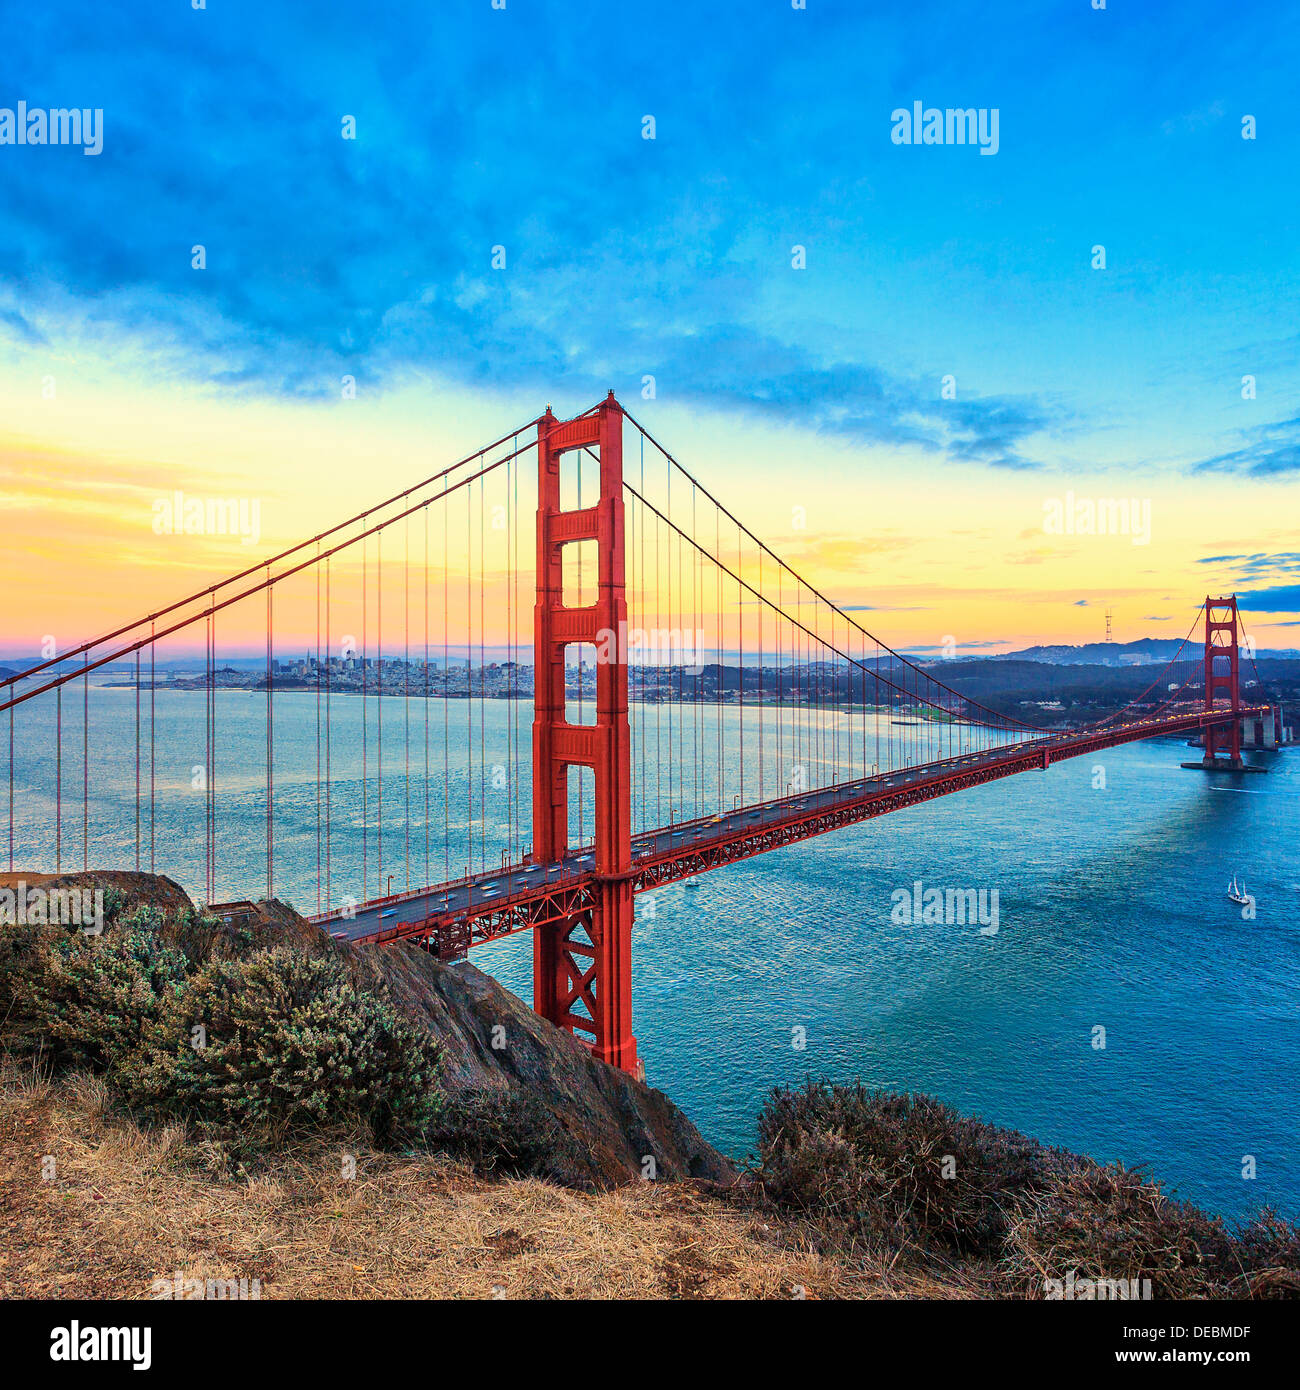 Vista del famoso puente Golden Gate Bridge al atardecer en San Francisco, California, EE.UU. Foto de stock